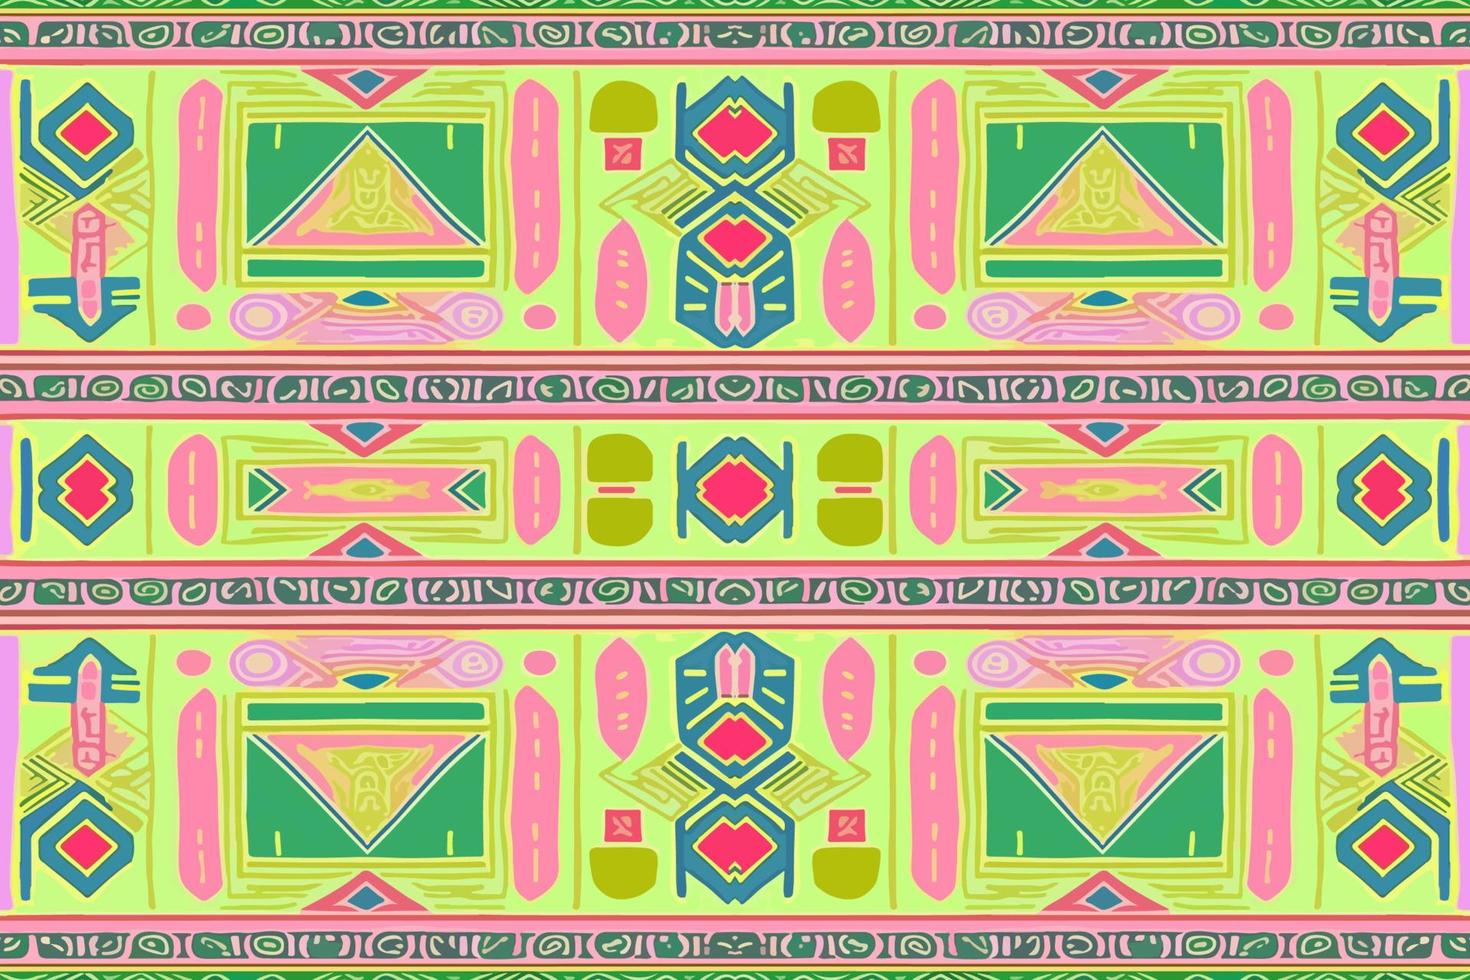 egyptisk mönster grön rosa och gul bakgrund. abstrakt traditionell folk antik stam- etnisk grafisk linje. utsmyckad elegant lyx årgång retro stil. textur textil- tyg etnisk egypten mönster vektor